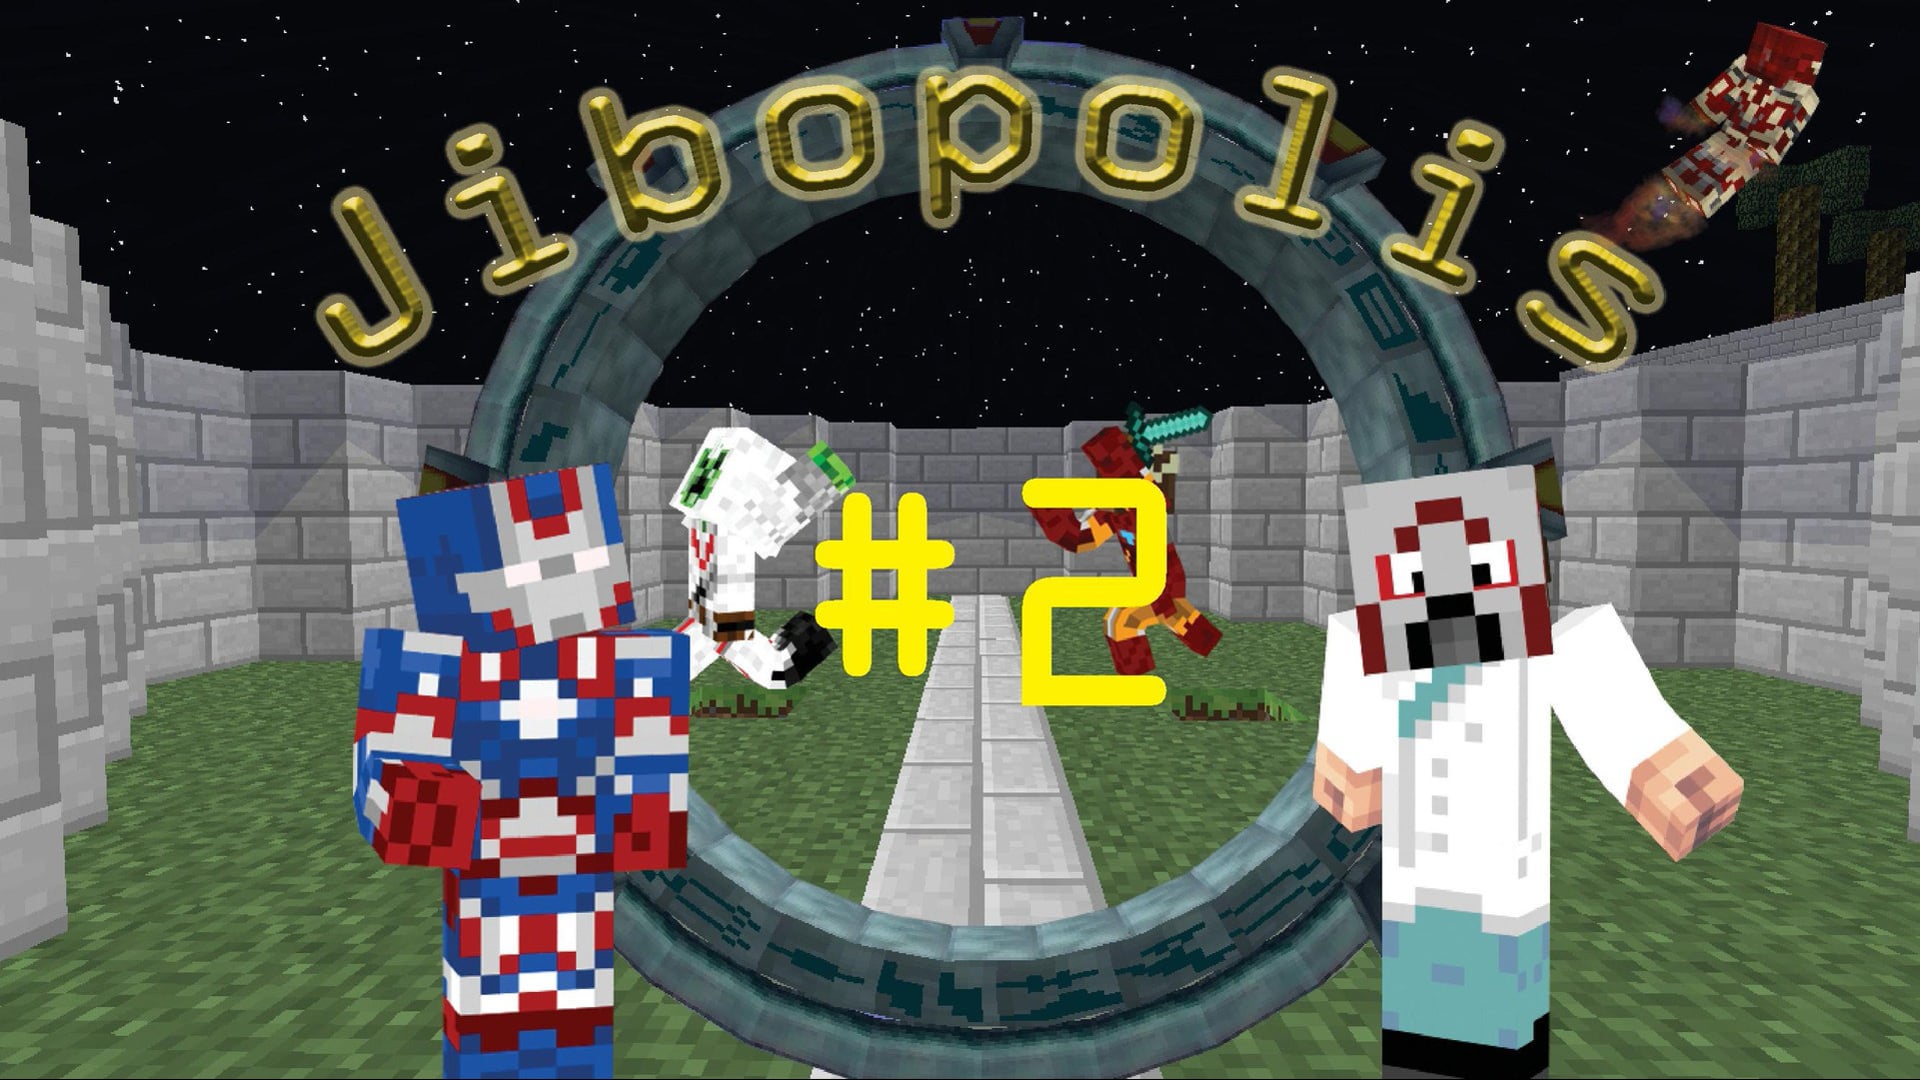 Jibopolis - Episode 2